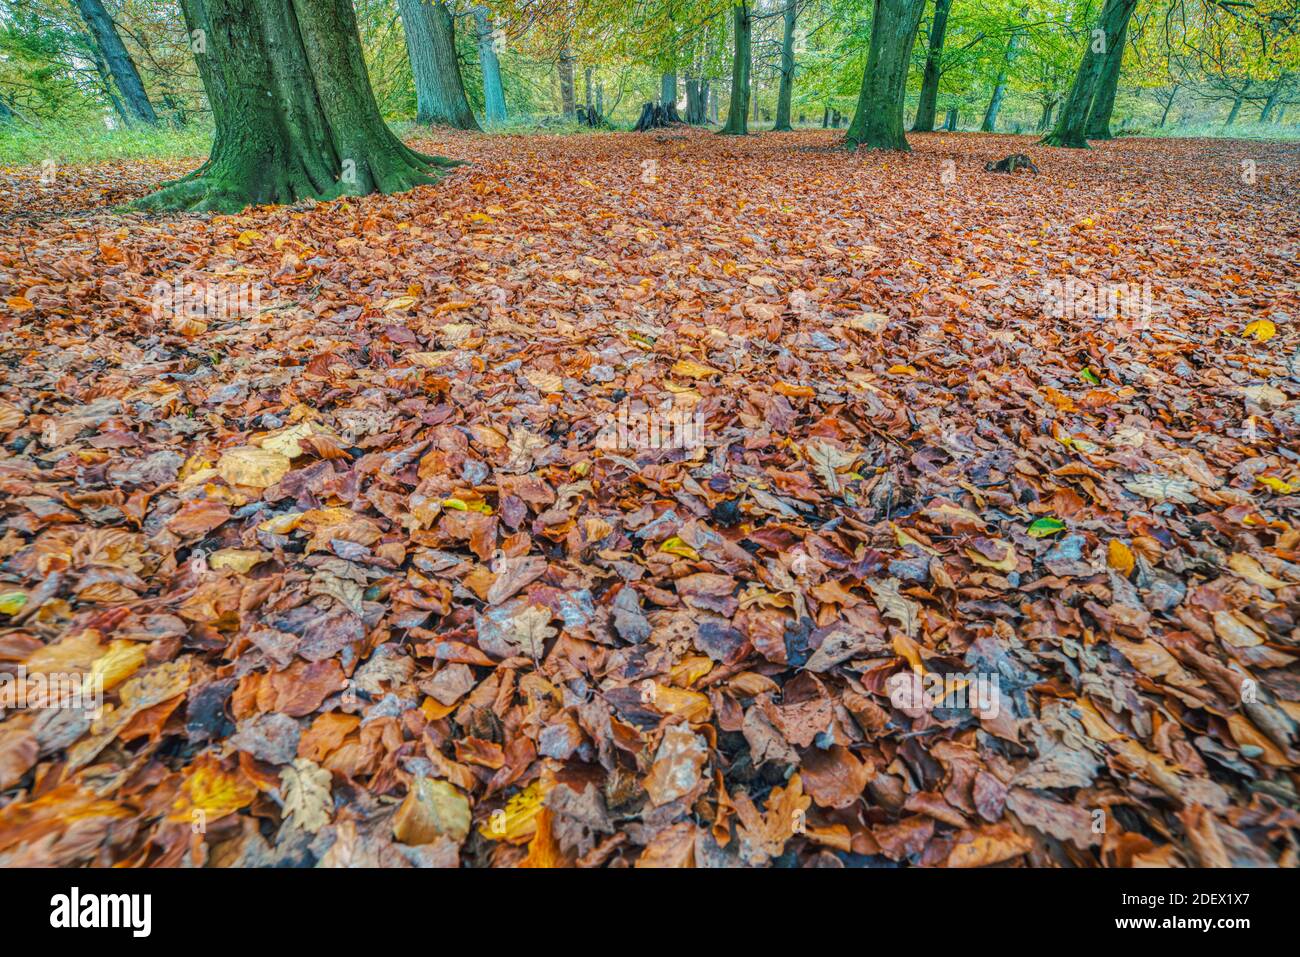 Le foglie cadono nel bosco o nel fogliame di Jaegersborg Dyrehave. L'illustrazione autunnale raffigura una struttura di foglie morte che suggerisce l'approccio autunnale Foto Stock